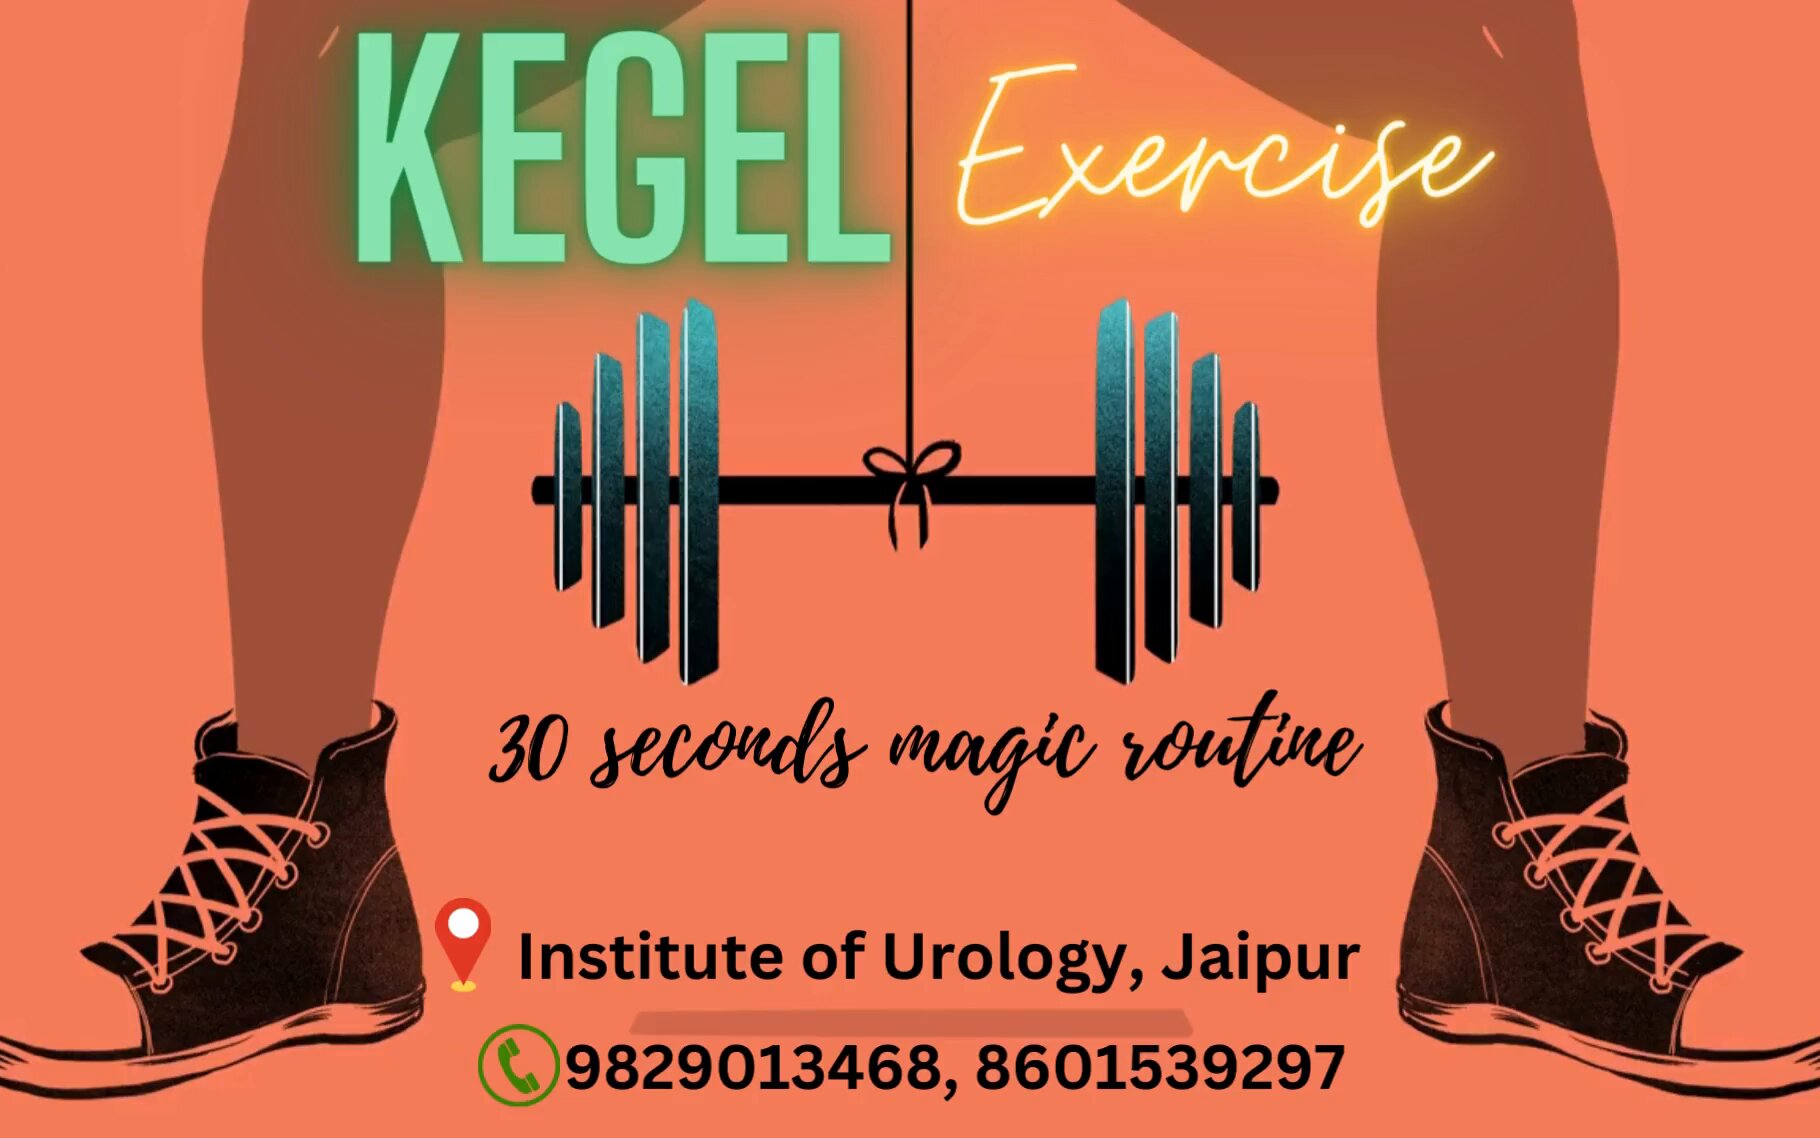 Kegel Exercises: Understand the Benefits